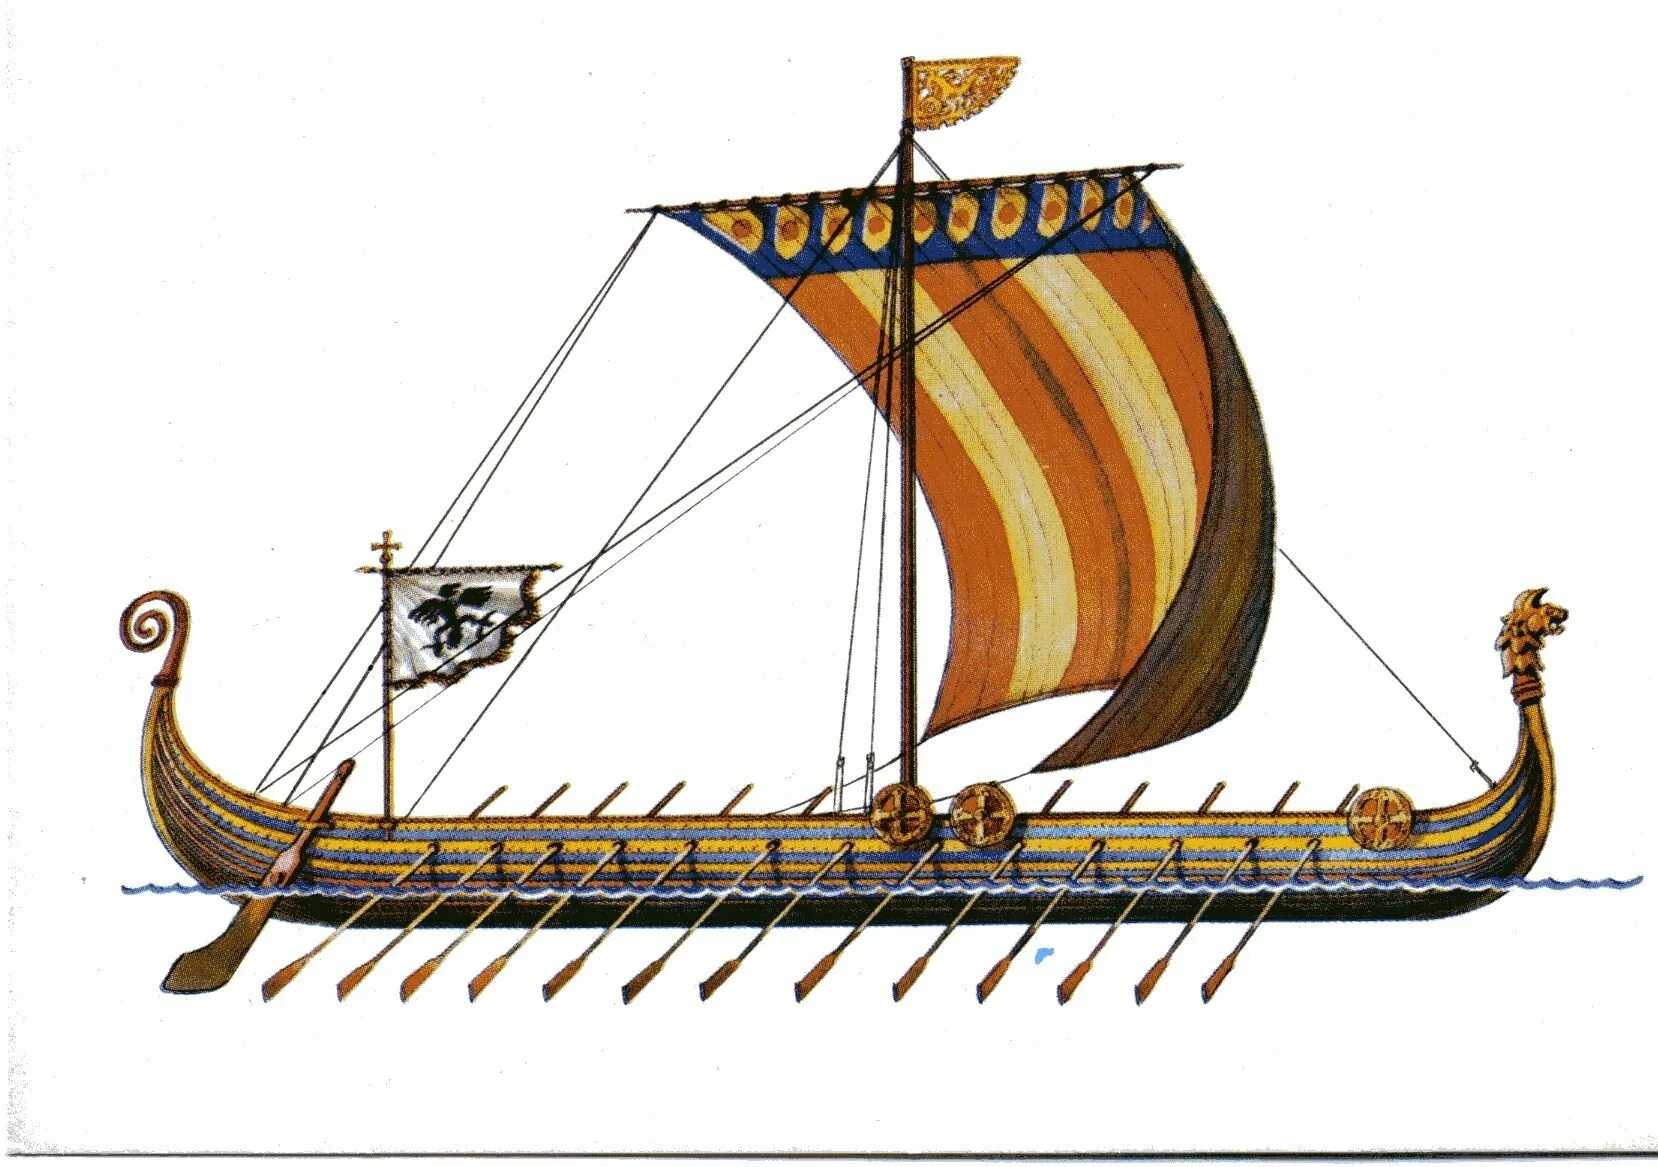 Ладья разбор. Корабль викингов Drakkar. Ладья викингов дракар. Корабль викингов Драккар 10 век. Корабли Вильгельма завоевателя.